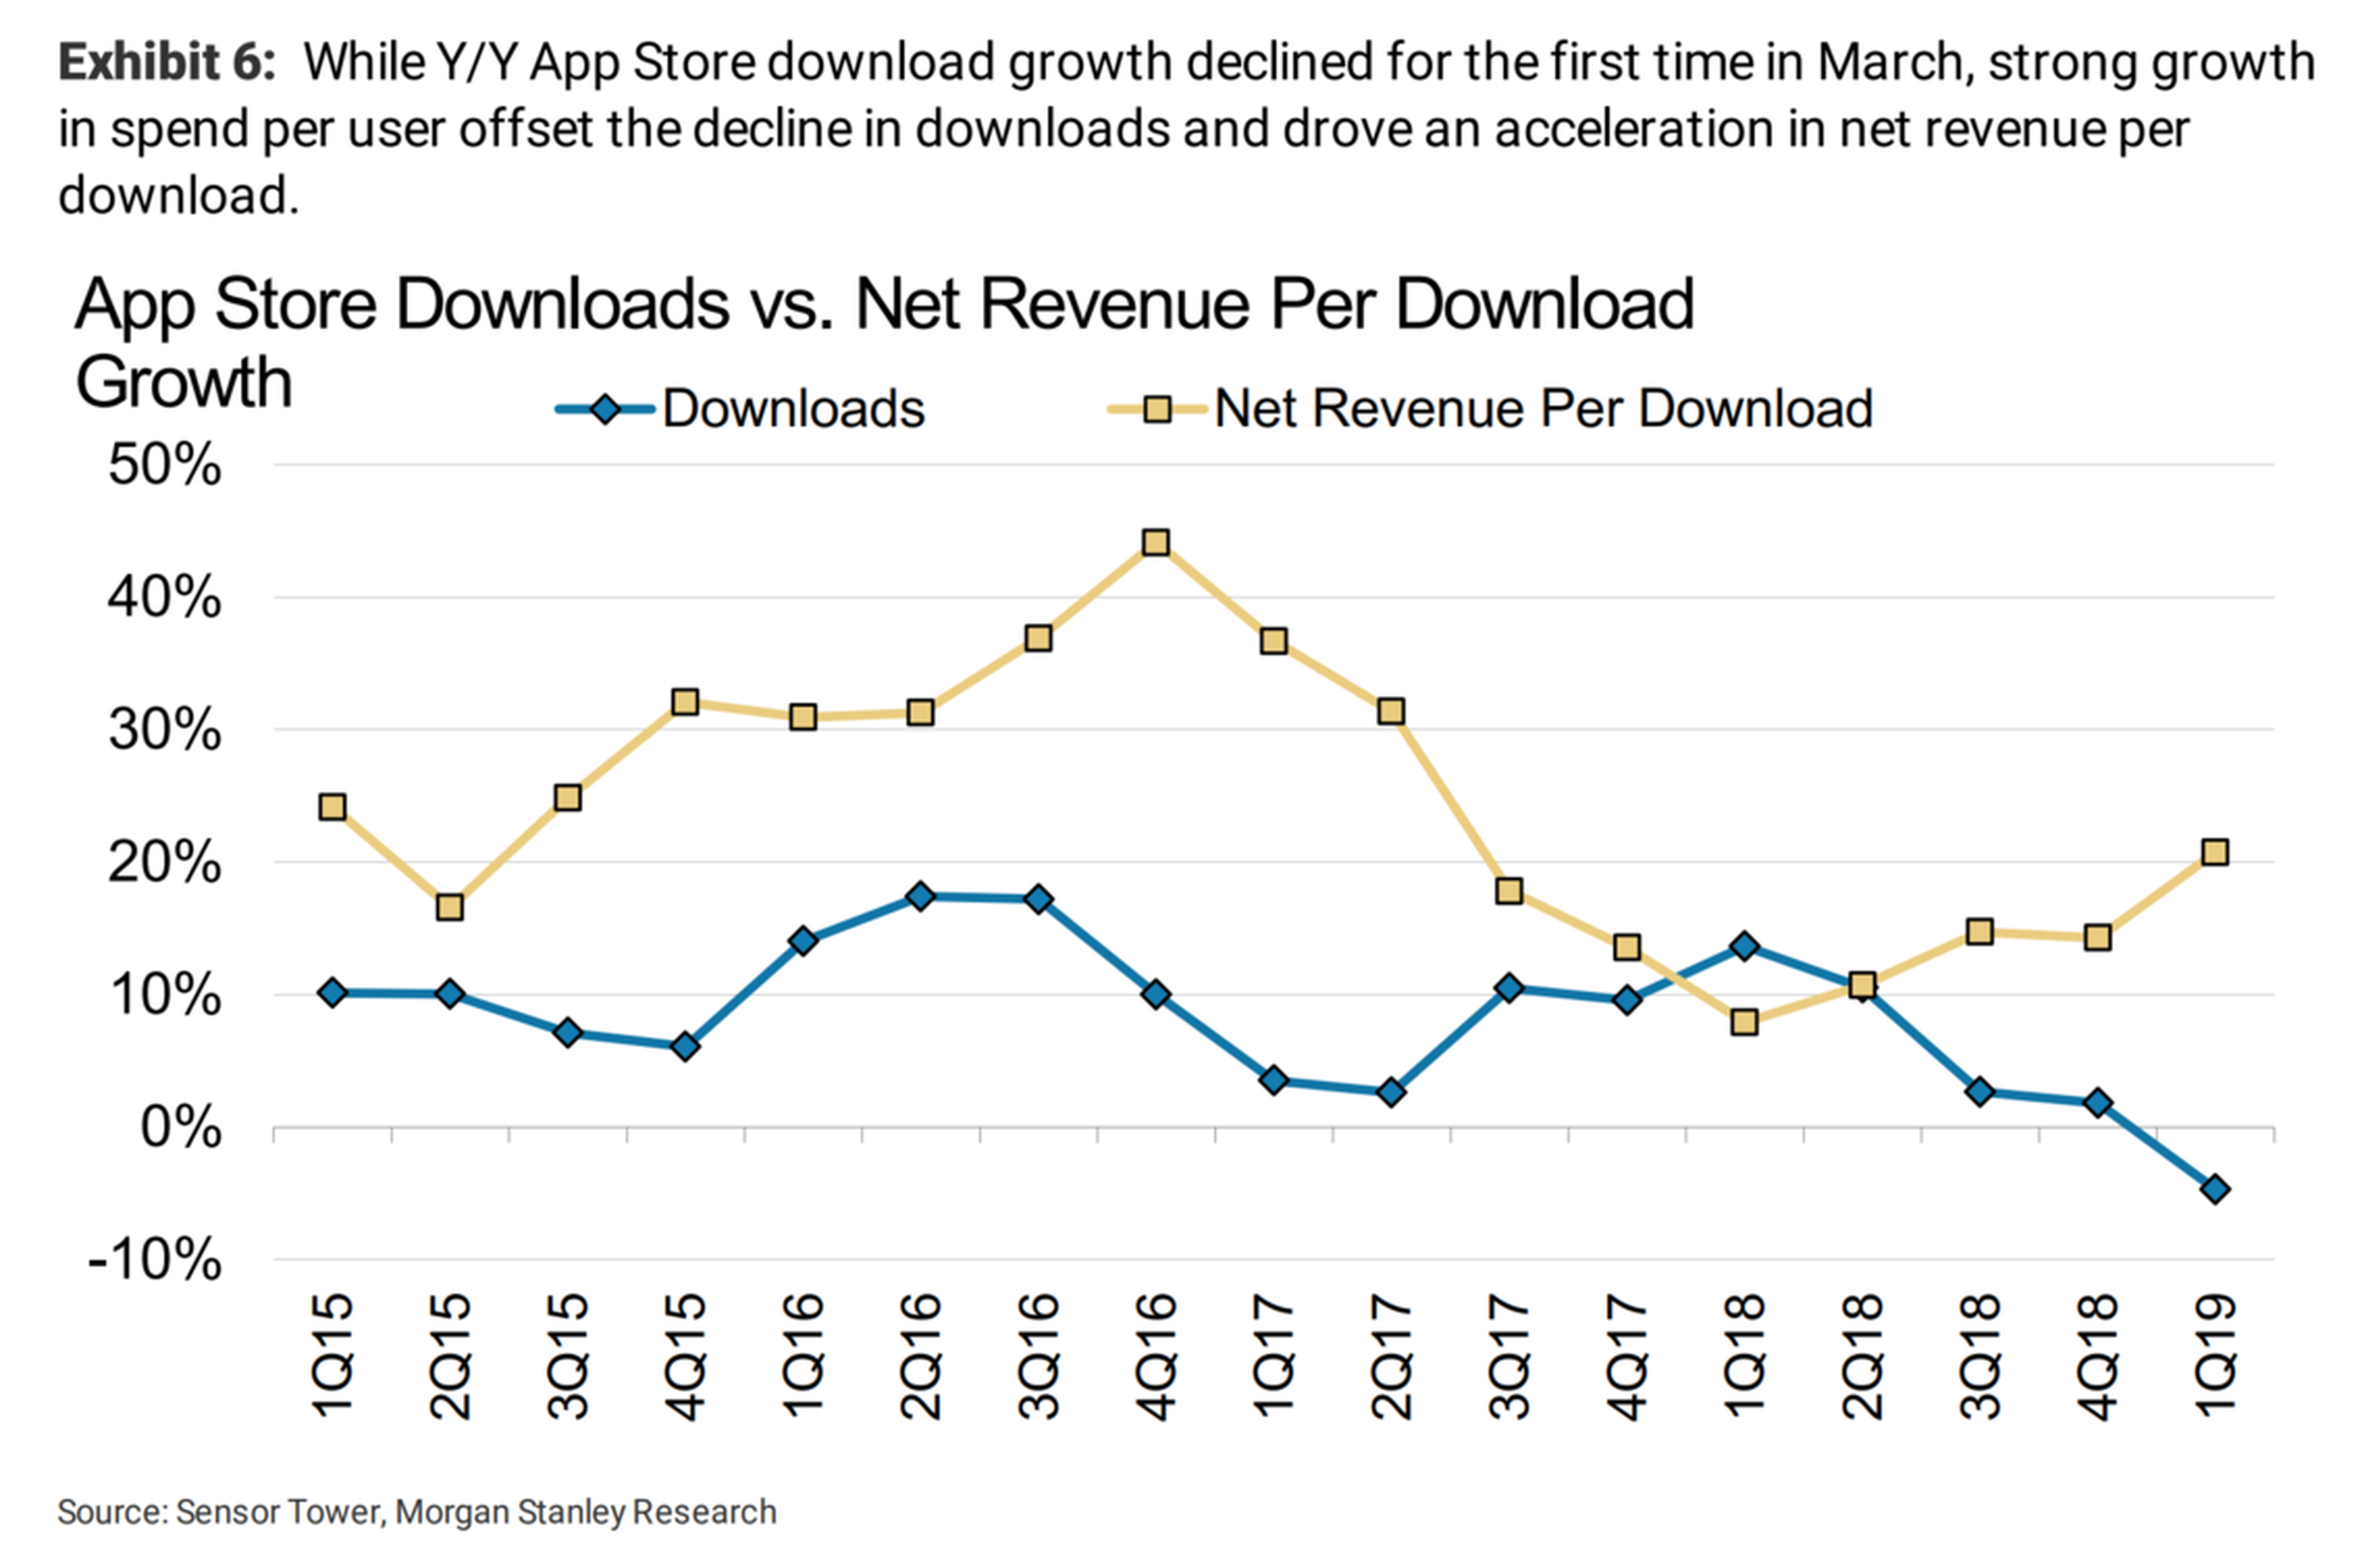 Las descargas de la App Store fueron negativas en el primer trimestre de 2019.